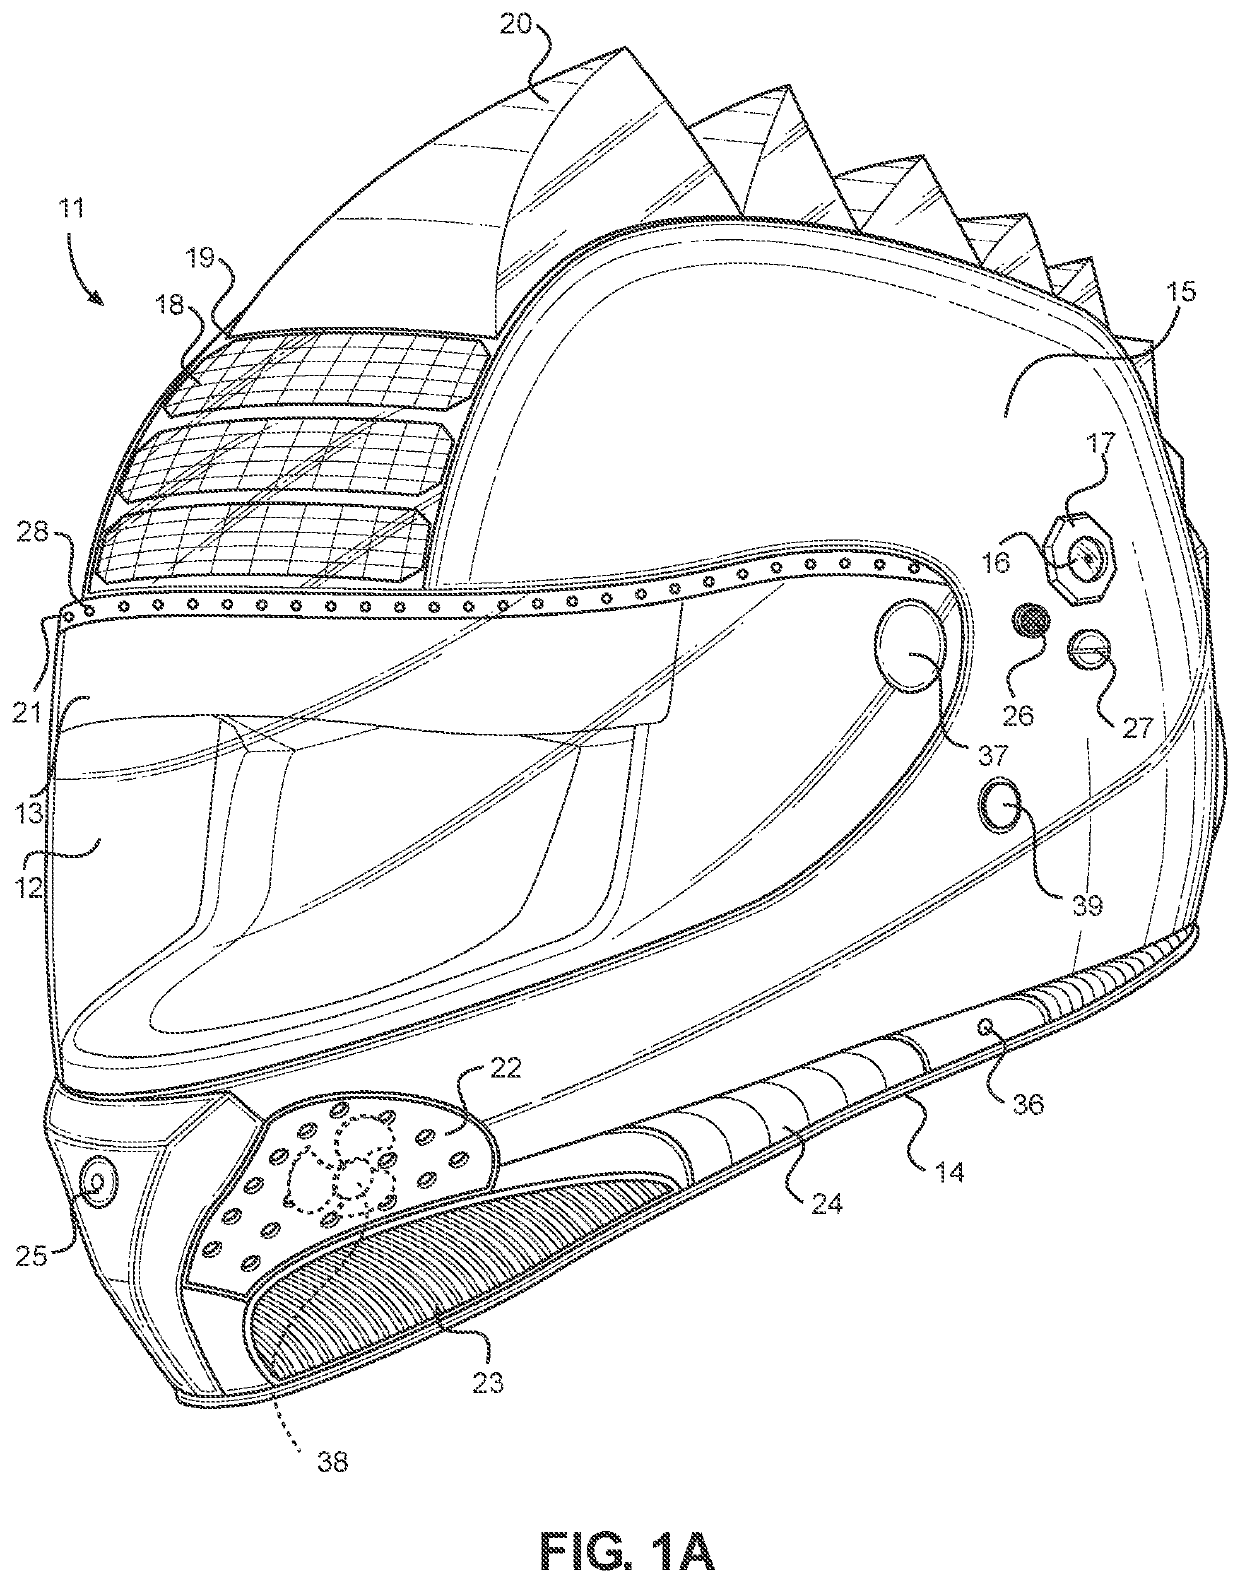 Electronic motorcycle helmet